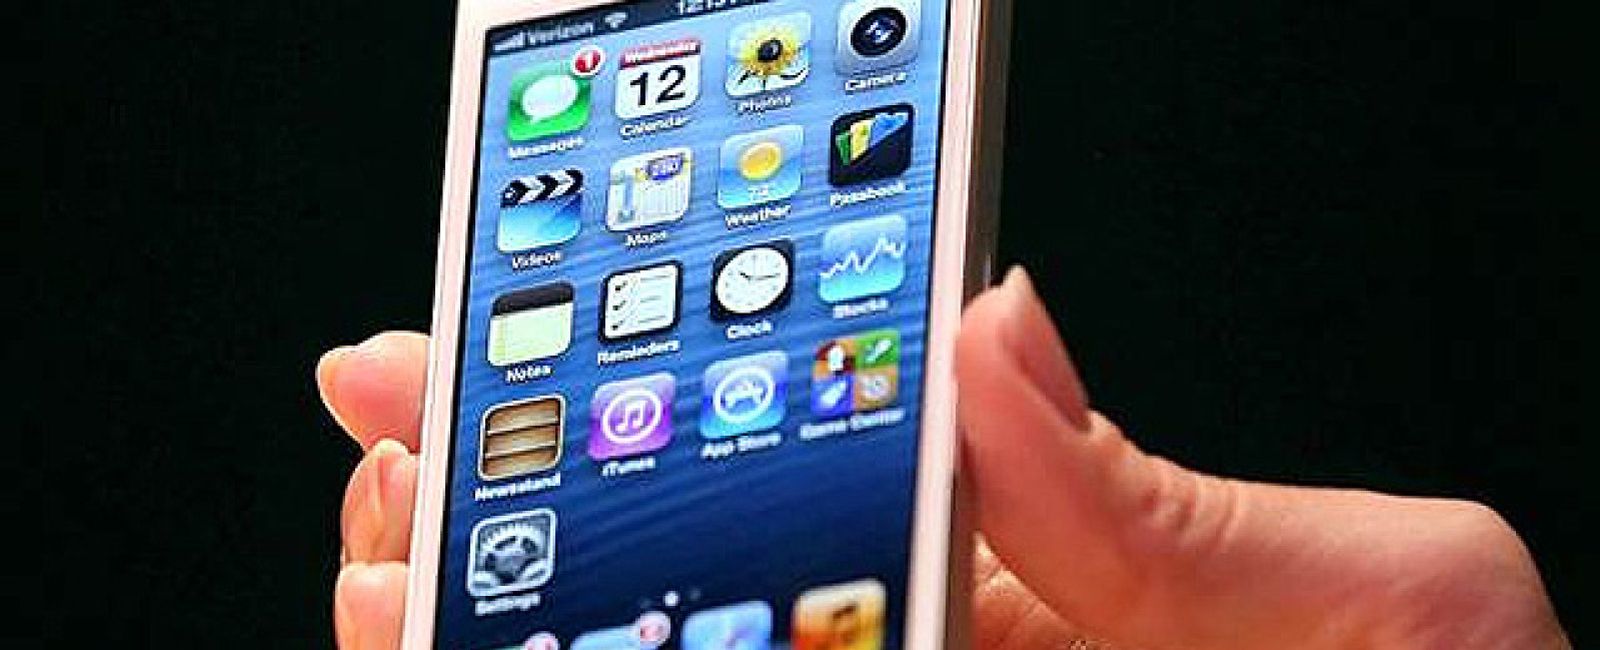 Foto: Si usas el iPhone como 'router' ojo, la clave se piratea en un minuto